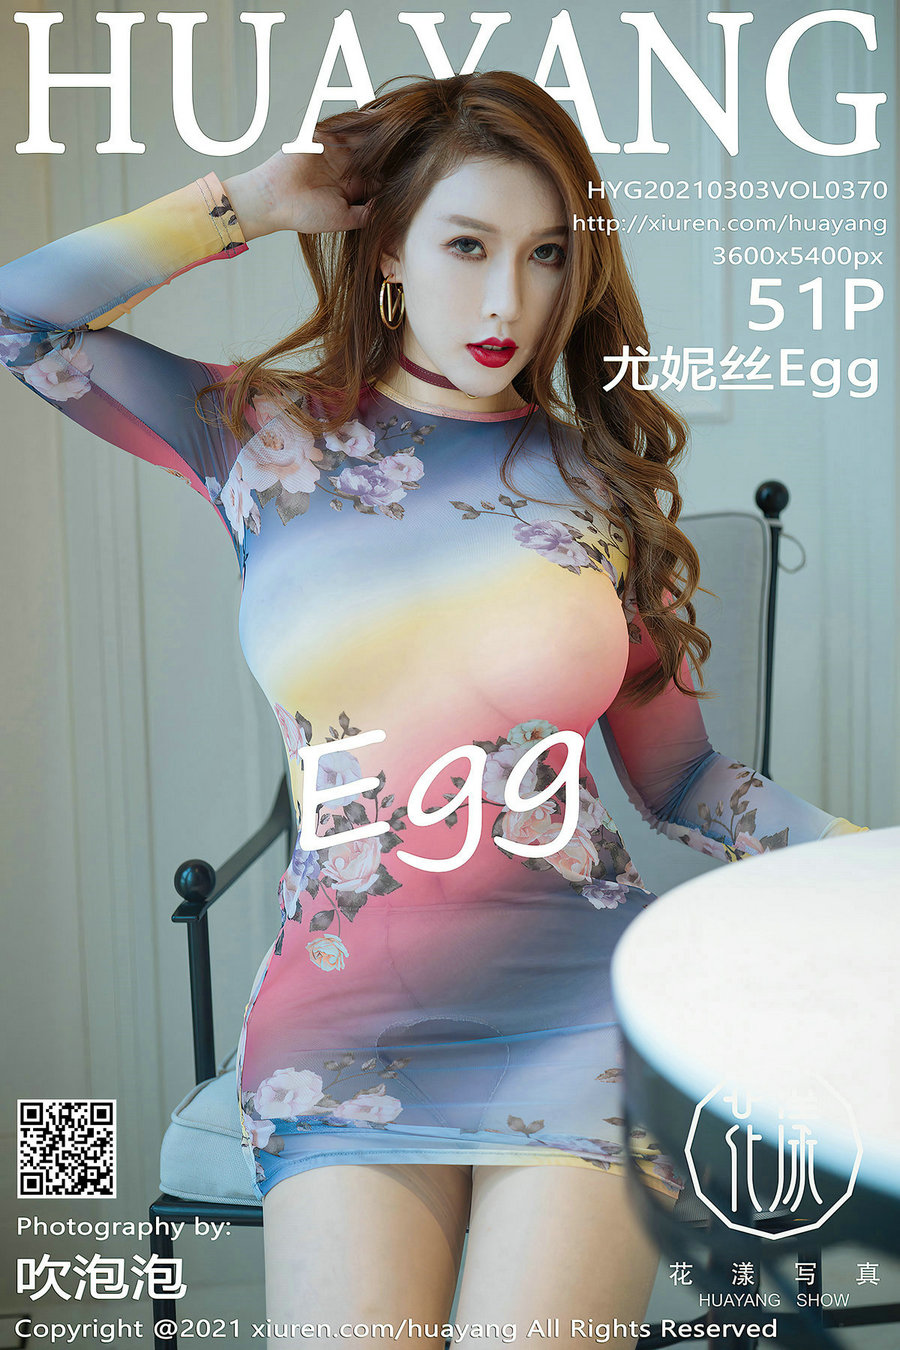 [HuaYang]花漾 2021.03.03 Vol.370 尤妮丝Egg [51P520MB]